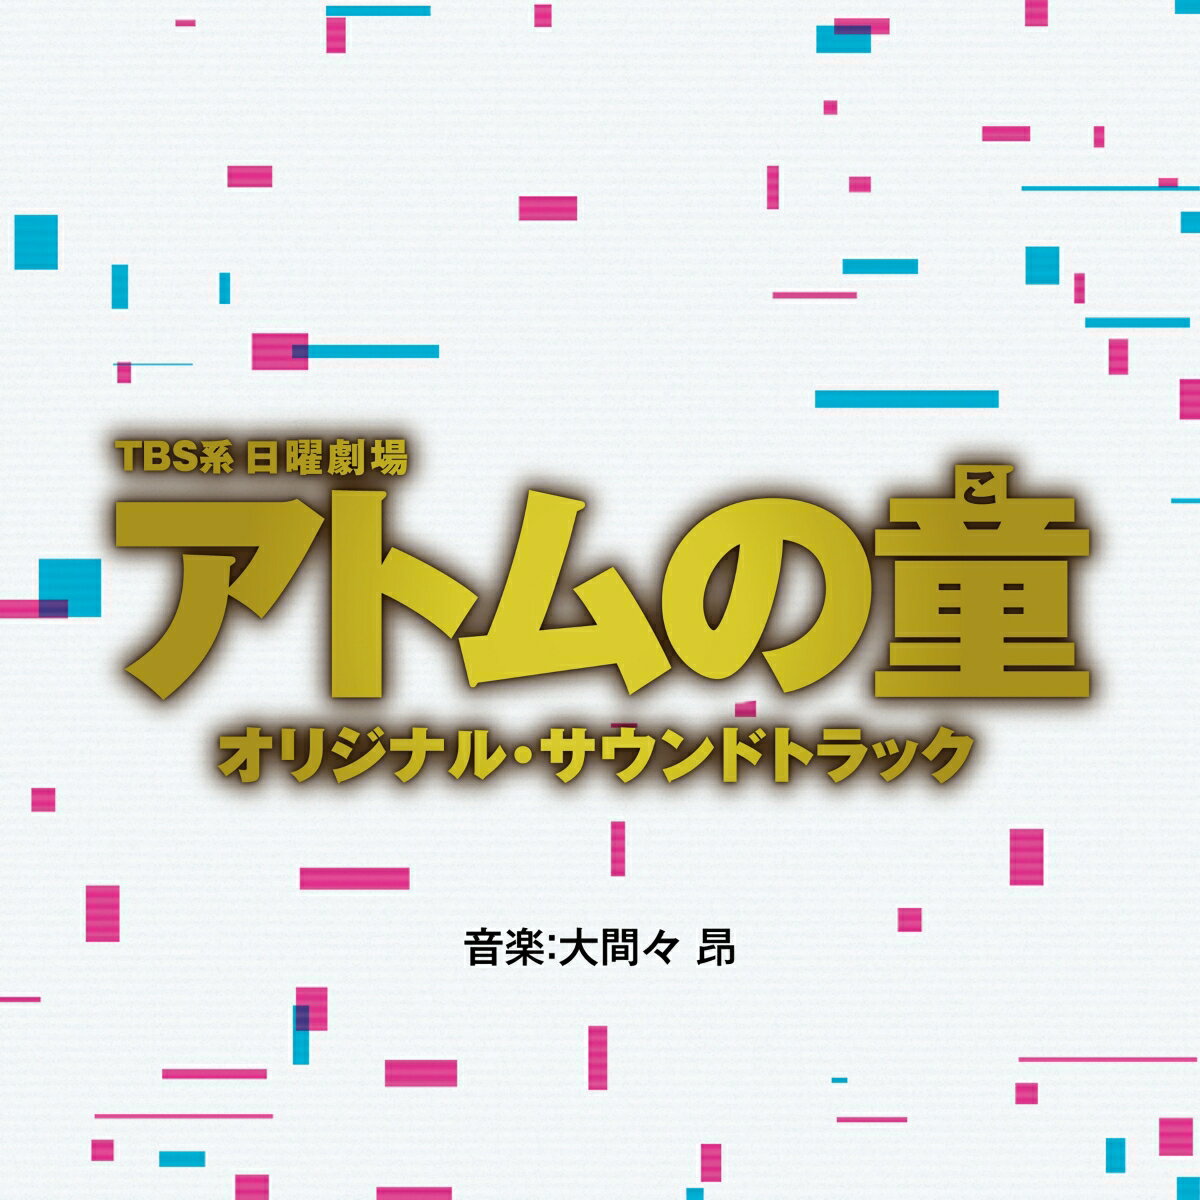 TBS系 日曜劇場 アトムの童 オリジナル サウンドトラック (オリジナル サウンドトラック)